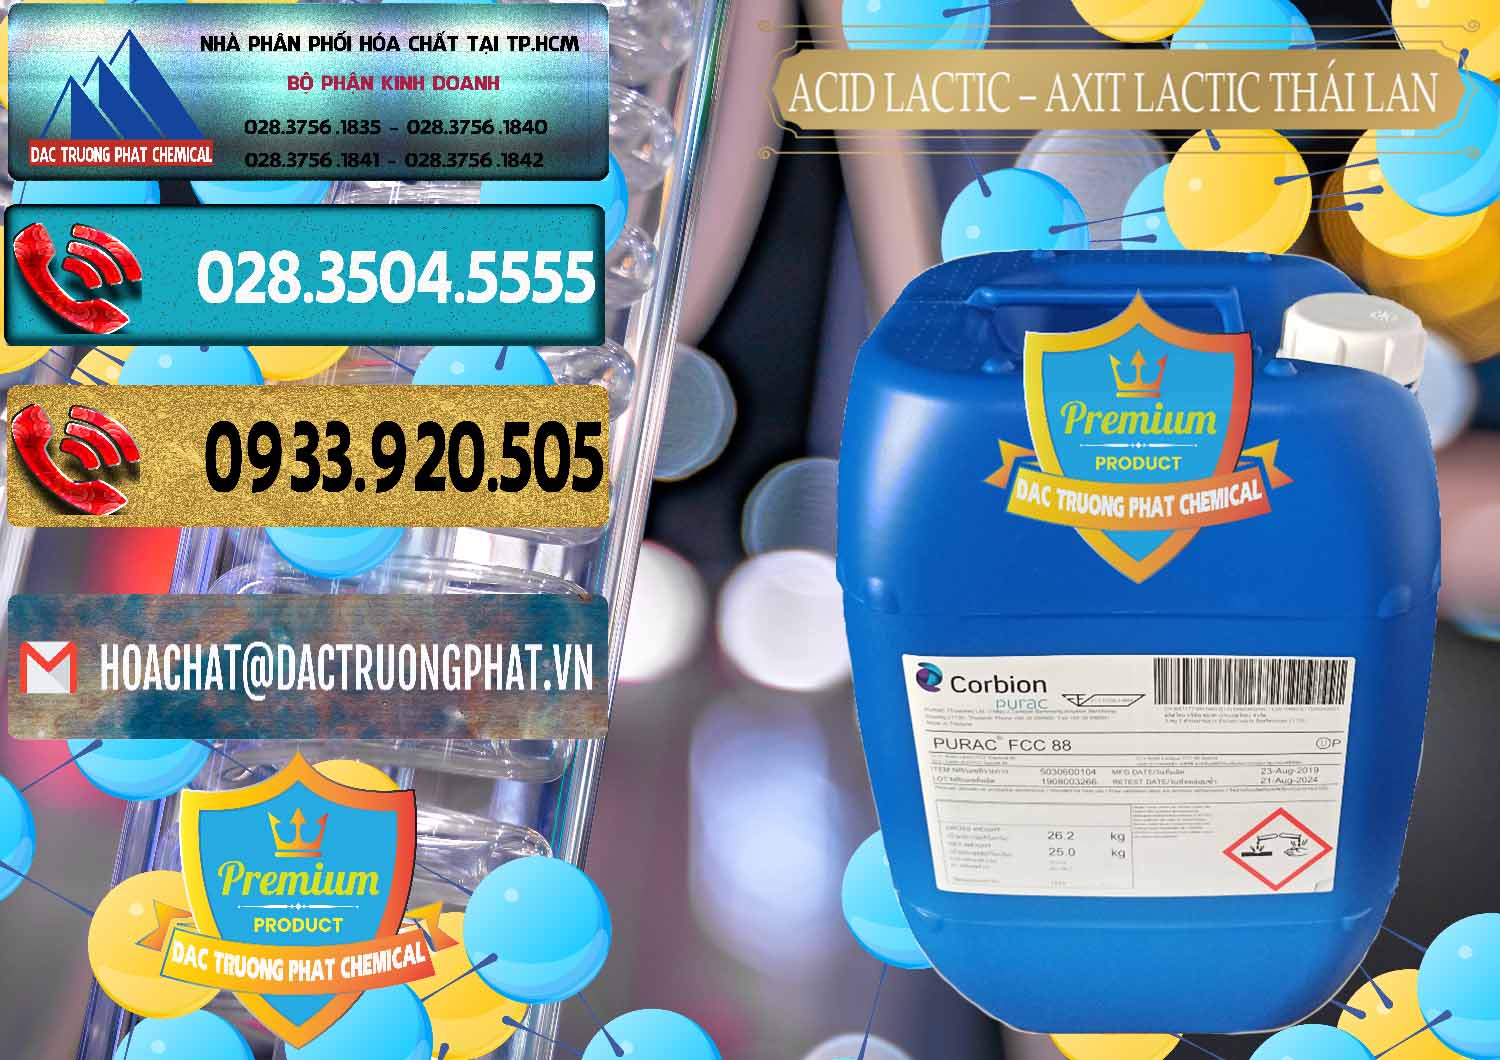 Cty chuyên phân phối _ bán Acid Lactic – Axit Lactic Thái Lan Purac FCC 88 - 0012 - Đơn vị chuyên cung ứng và phân phối hóa chất tại TP.HCM - hoachatdetnhuom.com